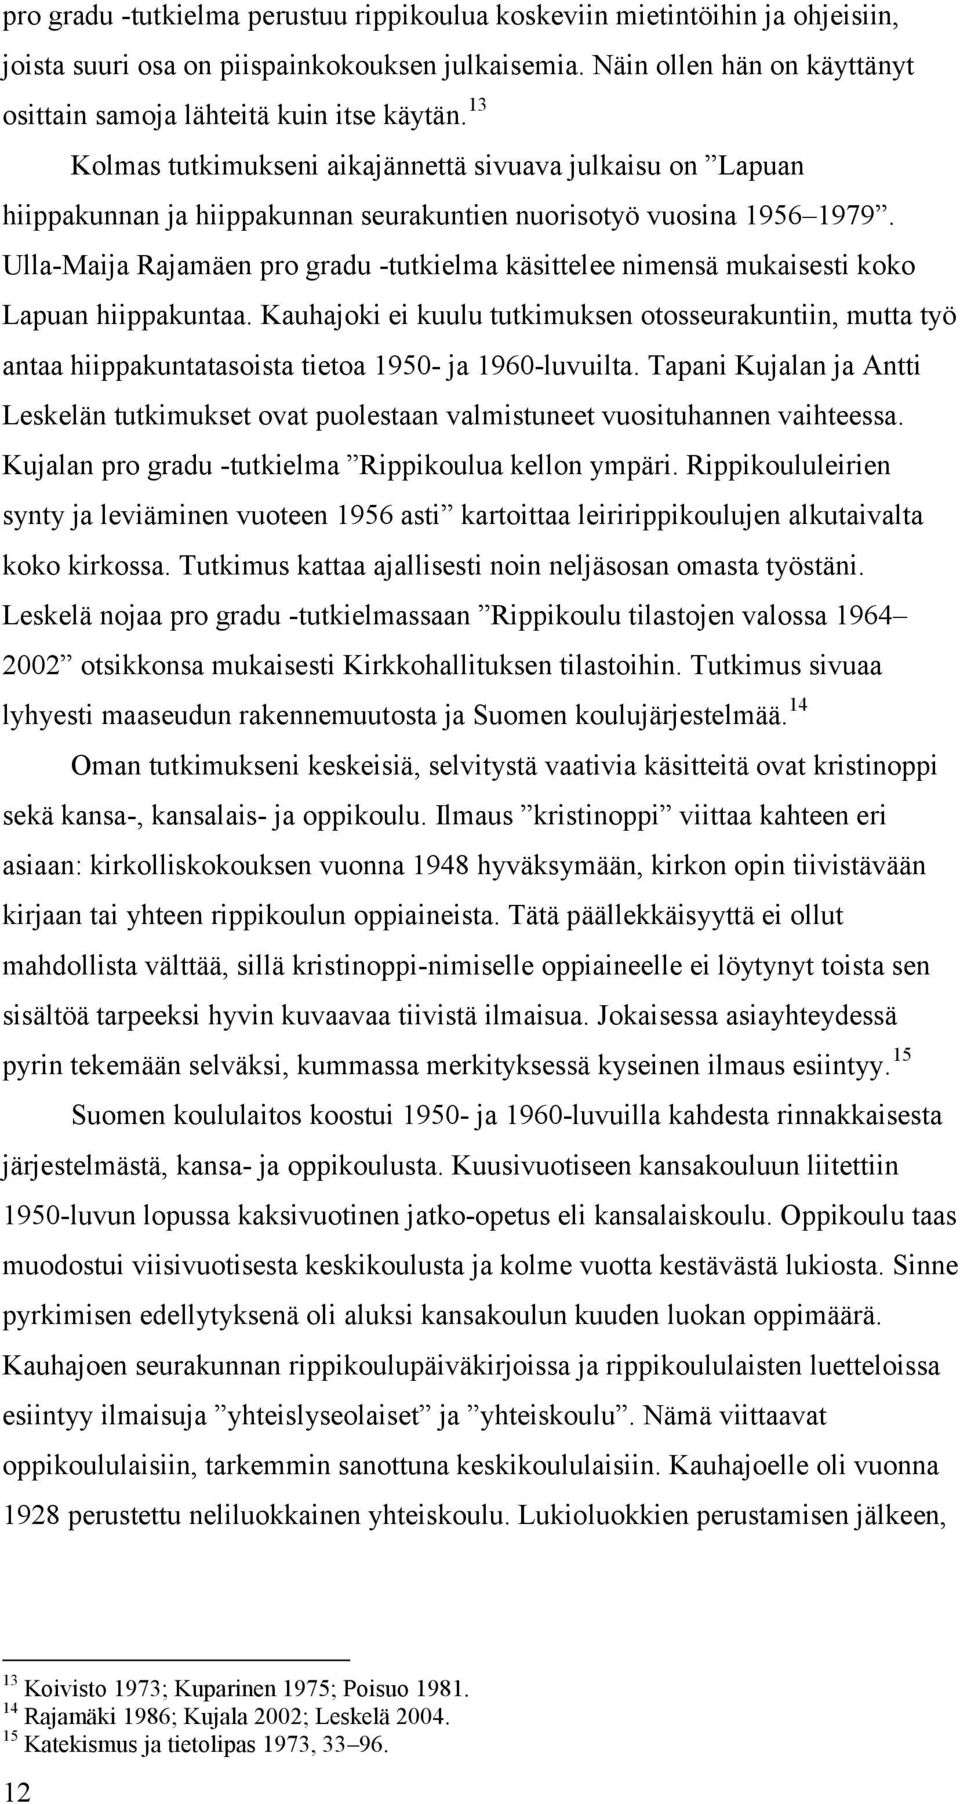 Ulla-Maija Rajamäen pro gradu -tutkielma käsittelee nimensä mukaisesti koko Lapuan hiippakuntaa.